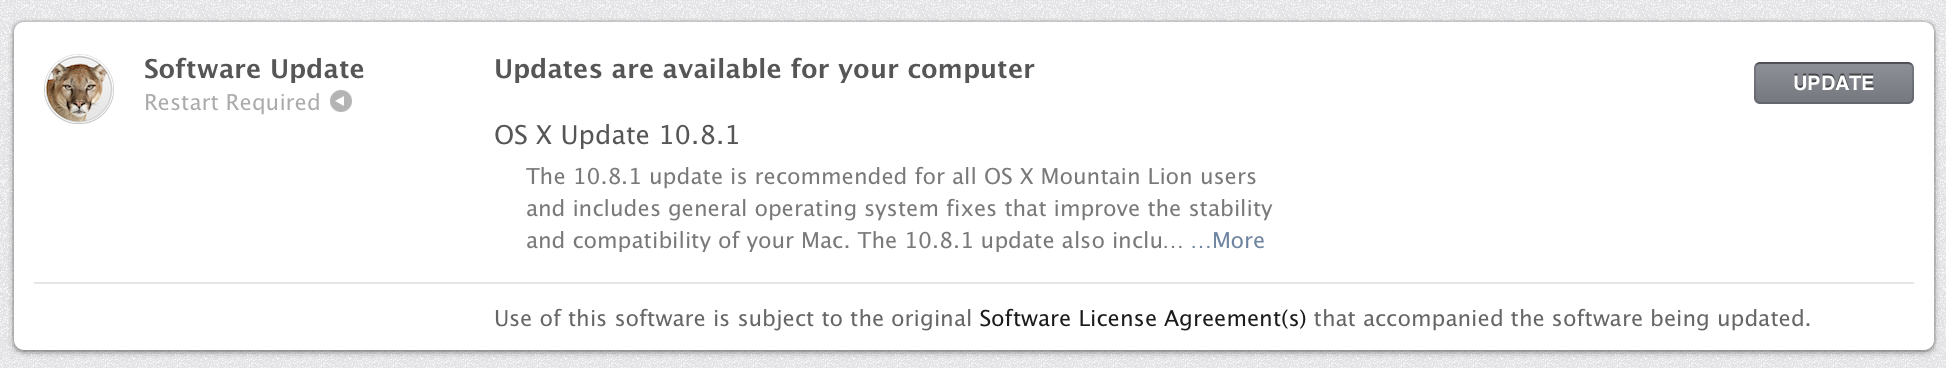 Oppdater Mac-en din til 10.8.1.